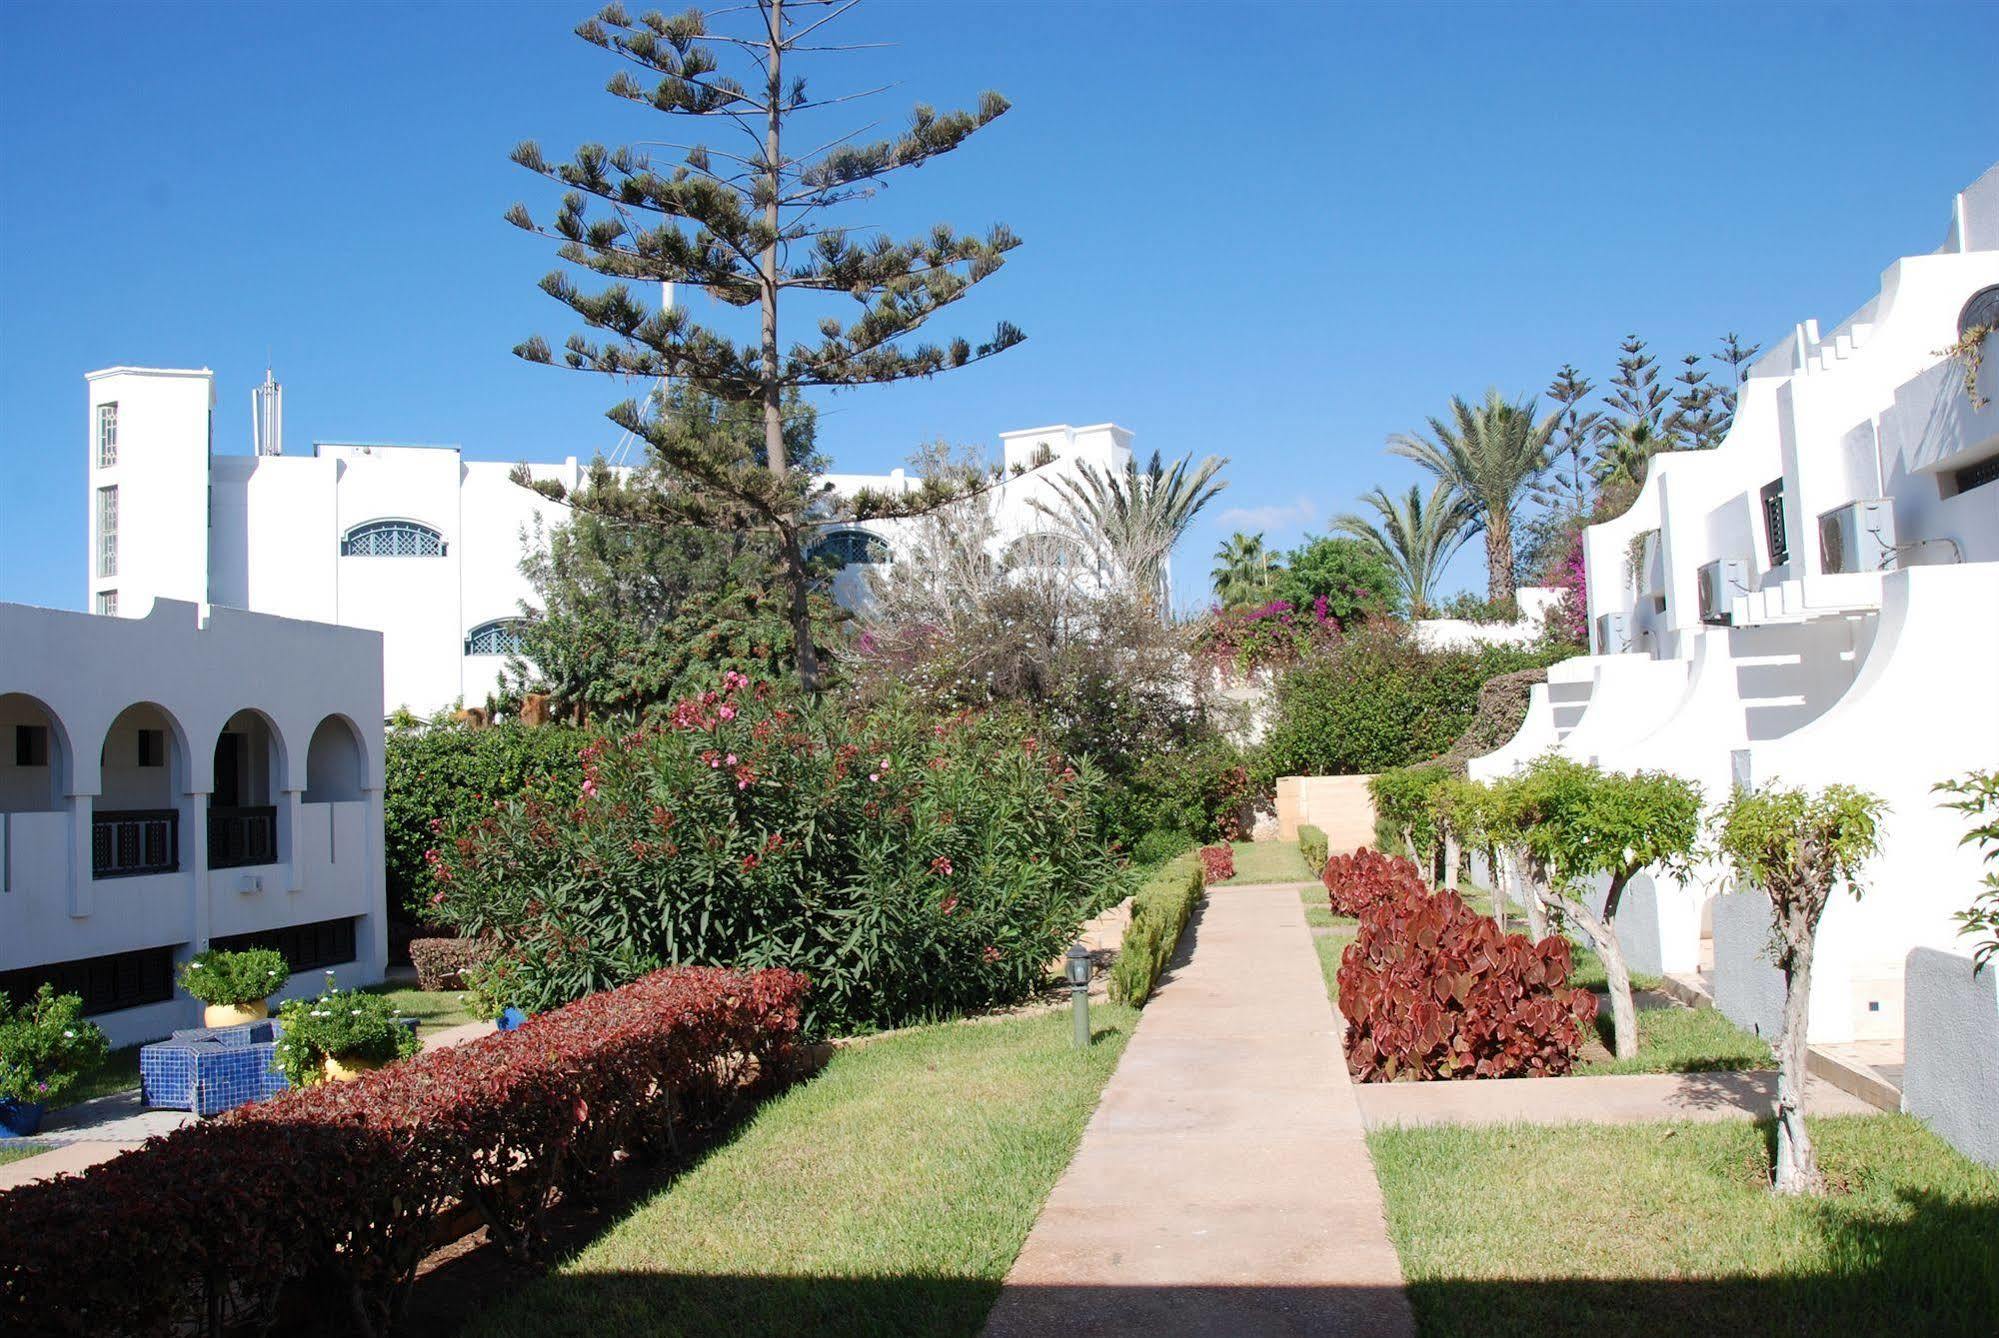 Hotel Les Omayades Agadir Exterior foto